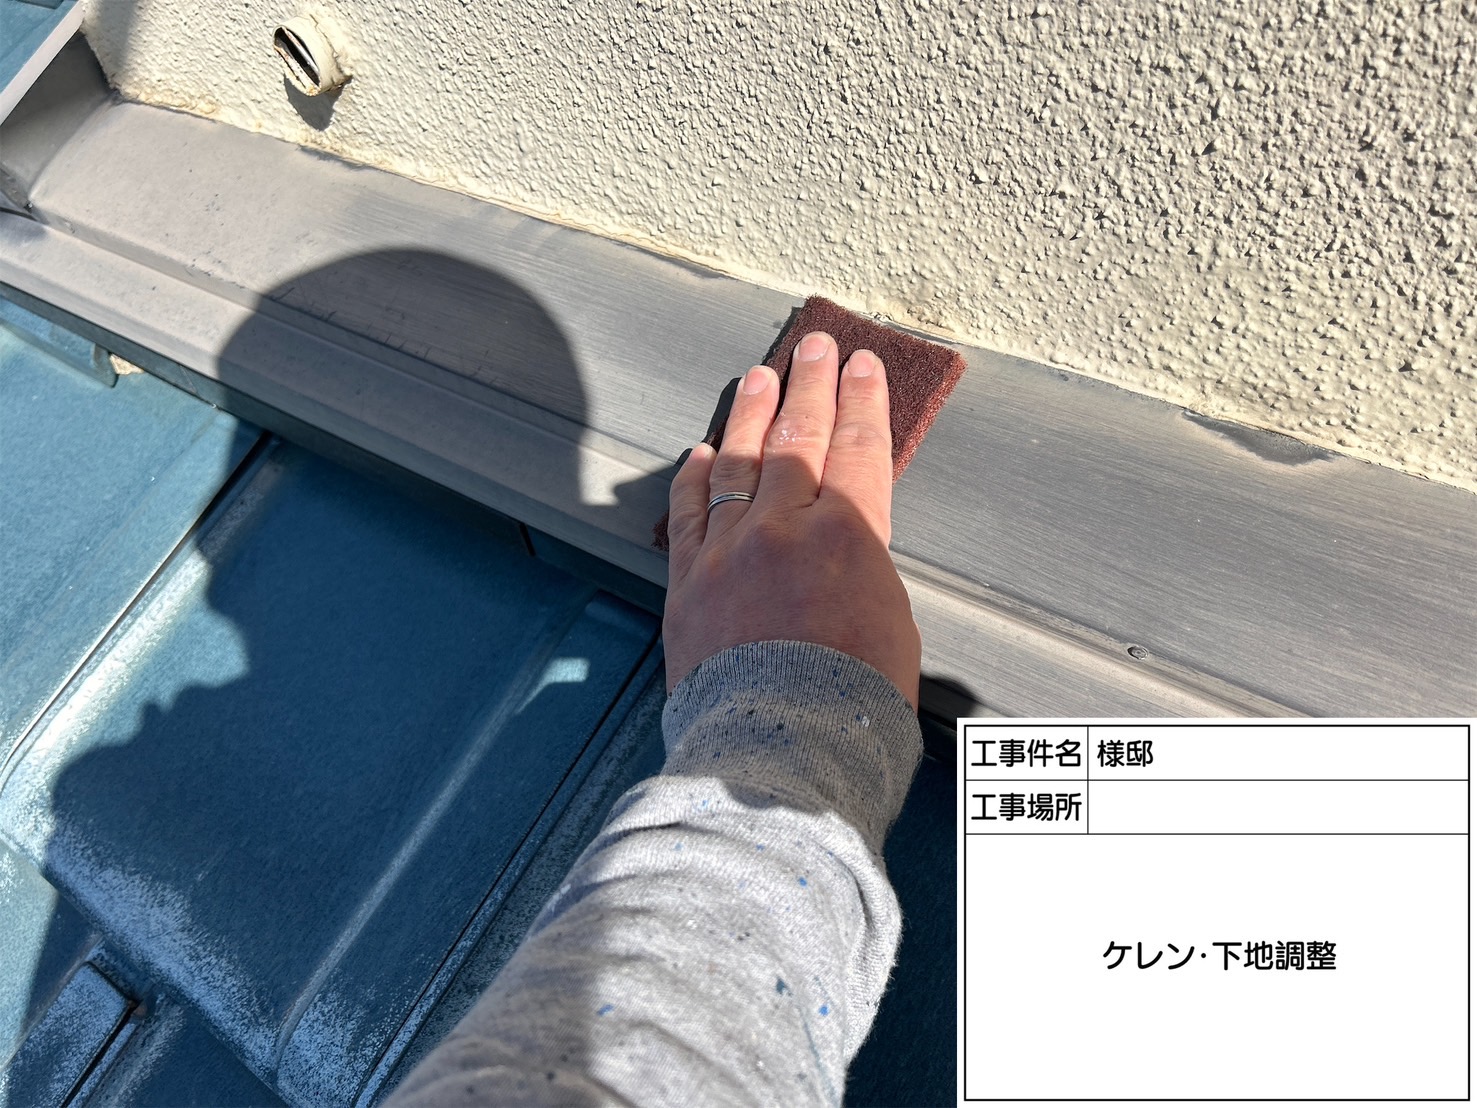 佐賀県三養基郡基山町小倉のS様邸で外壁の汚れやコケを除去し、ひび割れの補修も行った上で外壁・屋根の塗装工事を行っていきます。3/26着工です。【ご来店より】